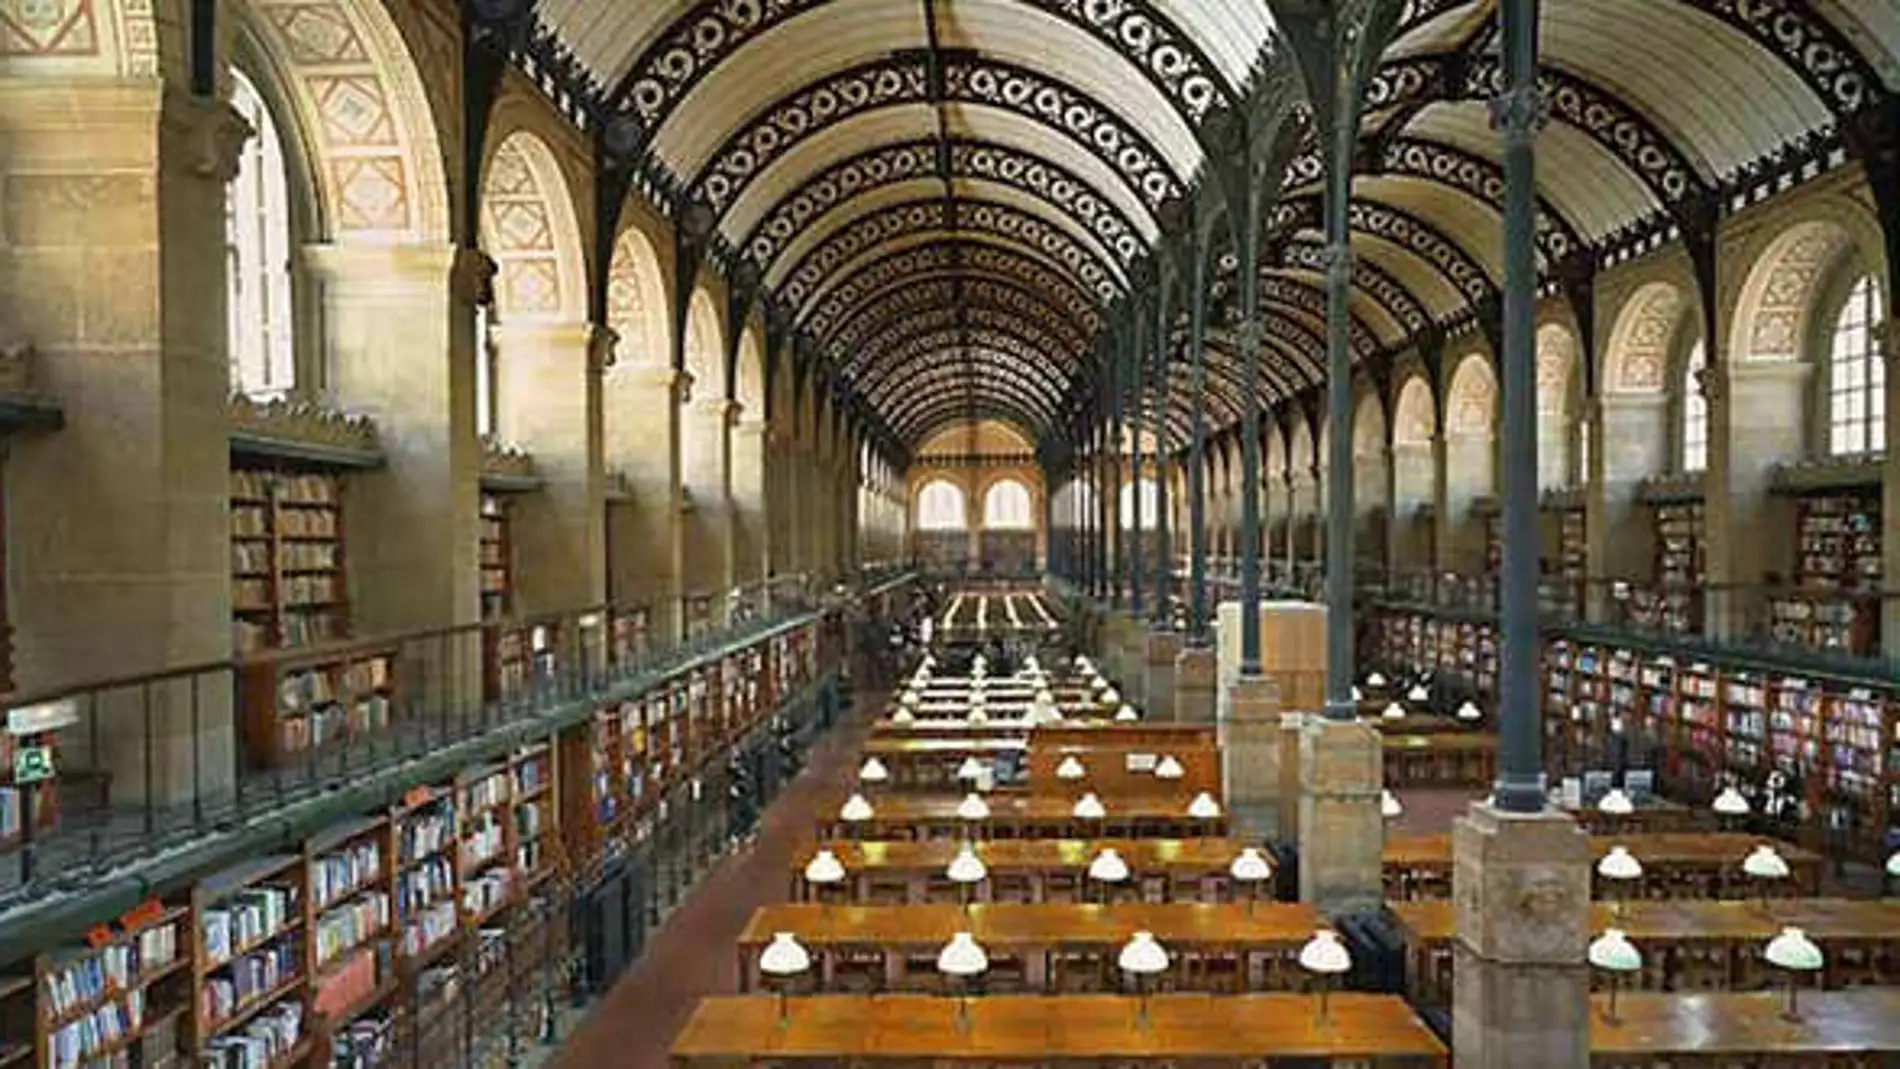 La Biblioteca vaticana cuenta con 1.600.000 libros, de ellos 8.400 incunables.